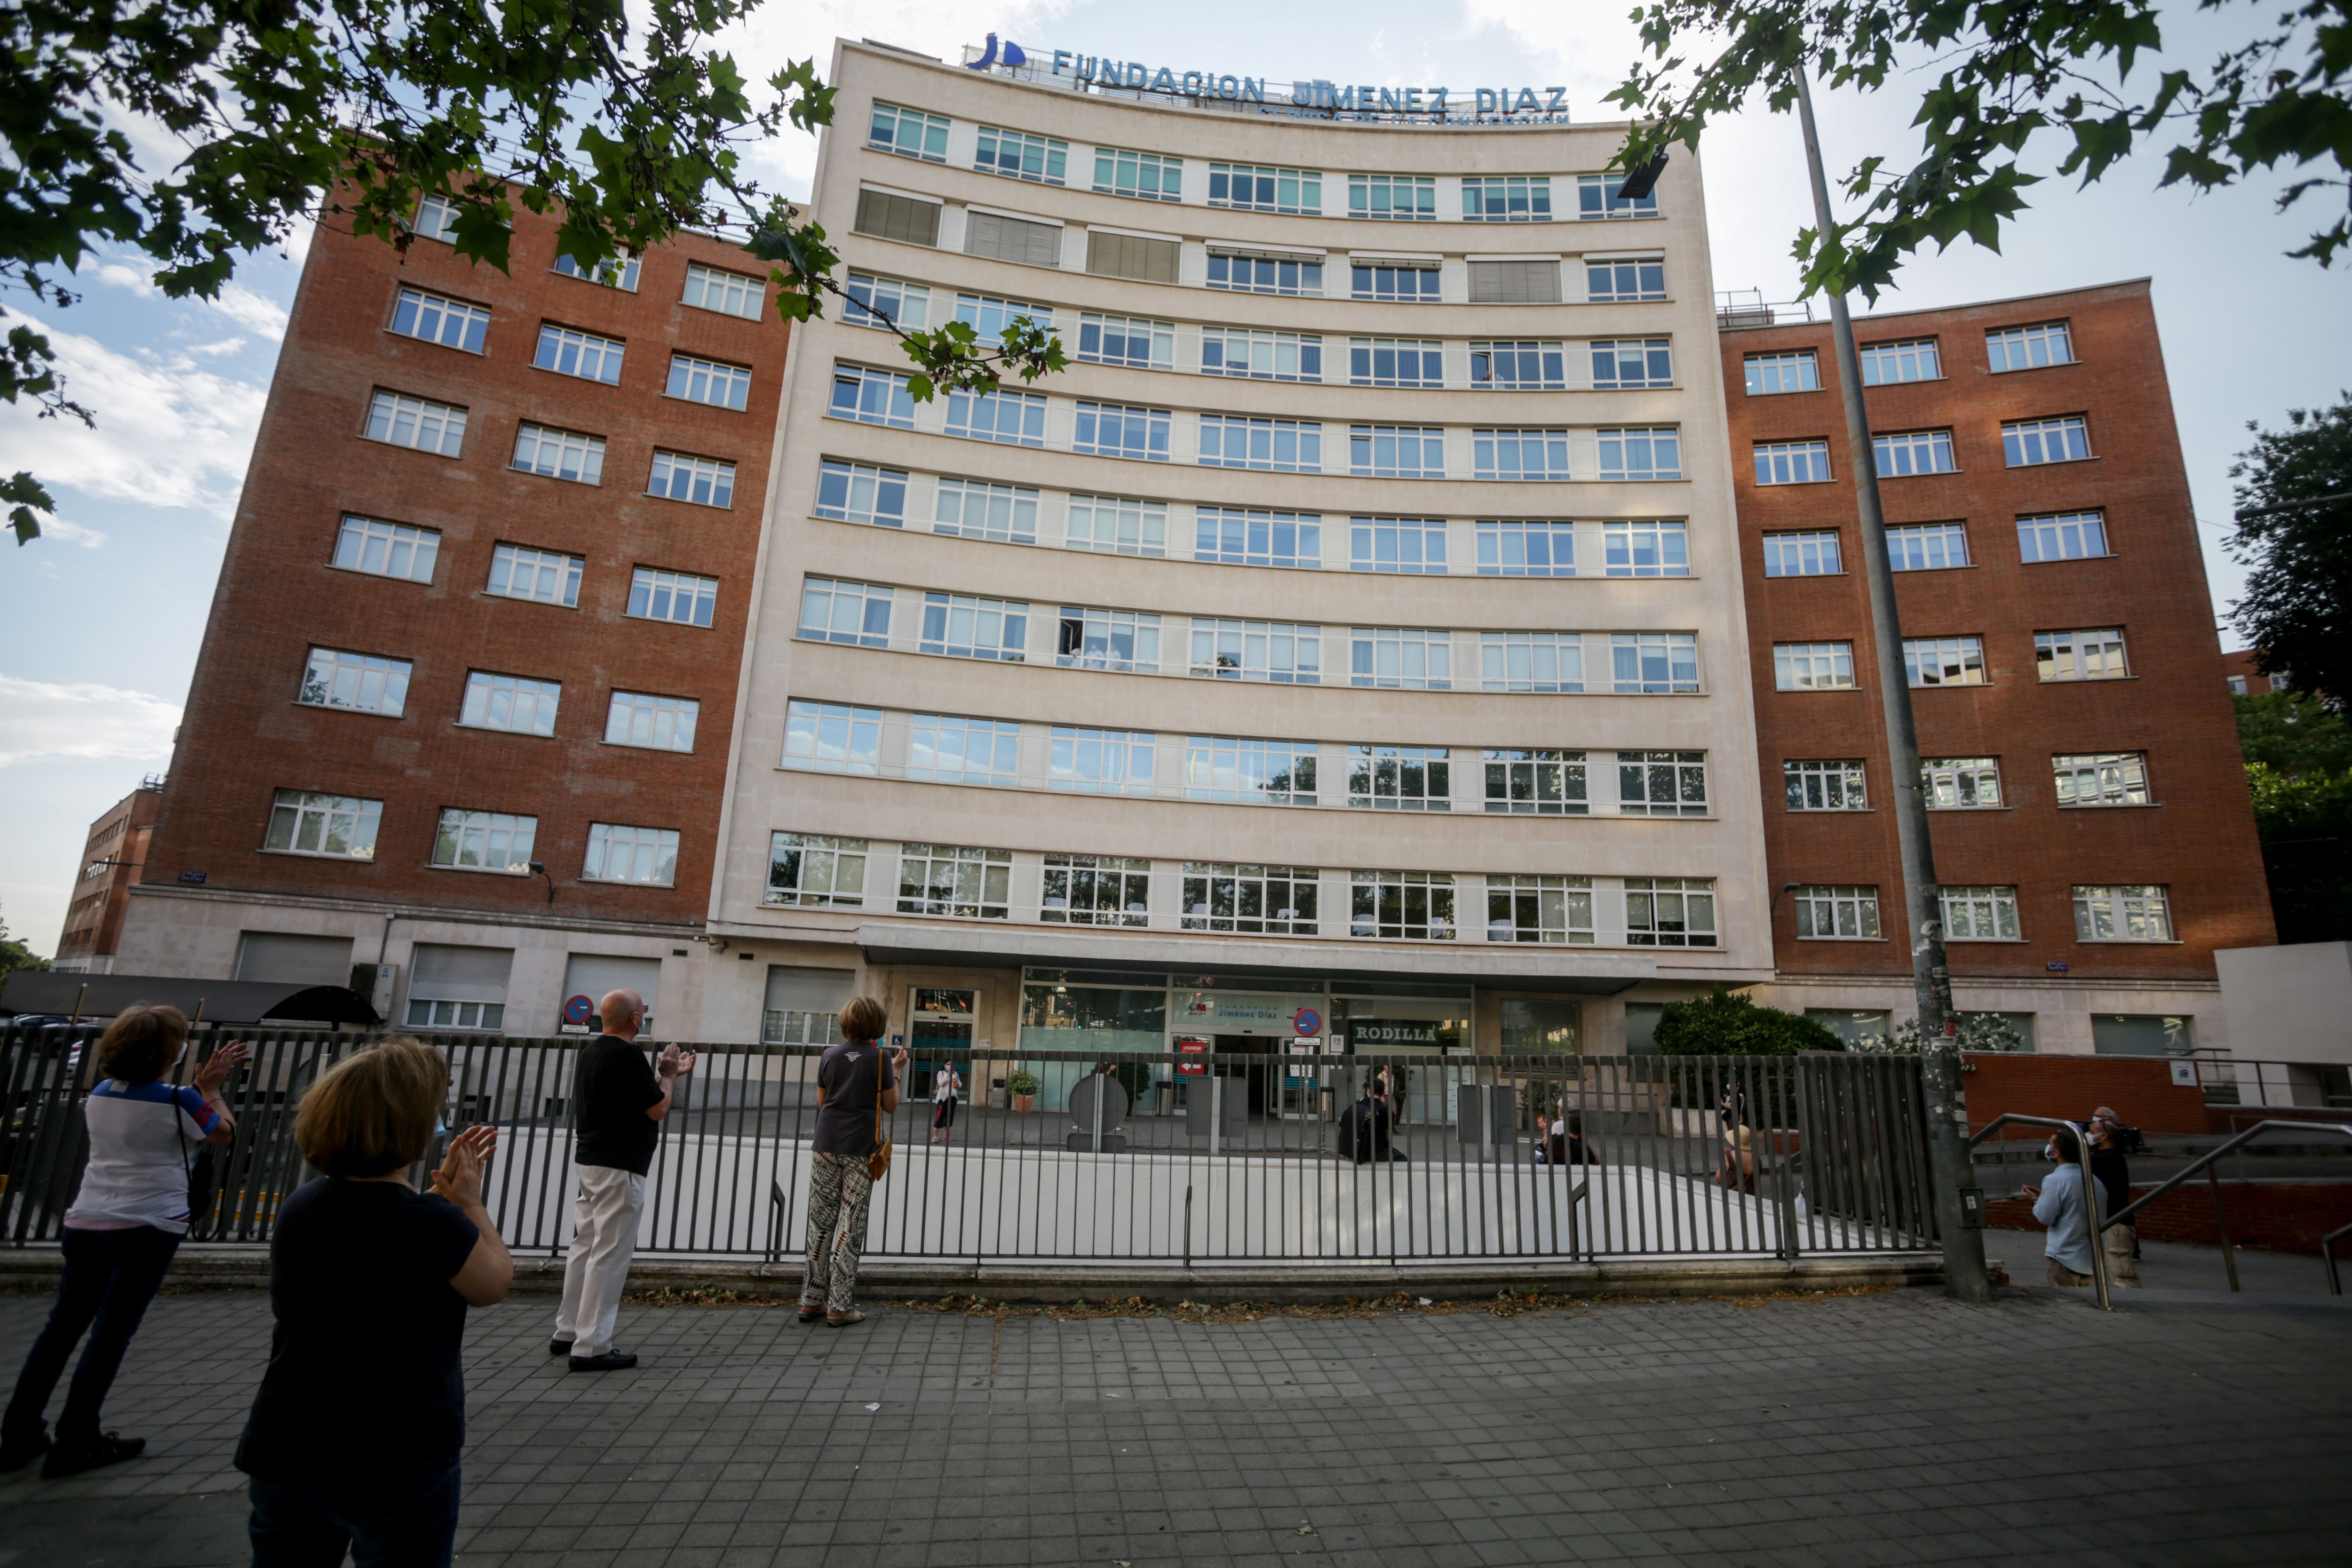 La Fundación Jiménez Díaz, hospital de alta complejidad de Madrid con menores listas de espera